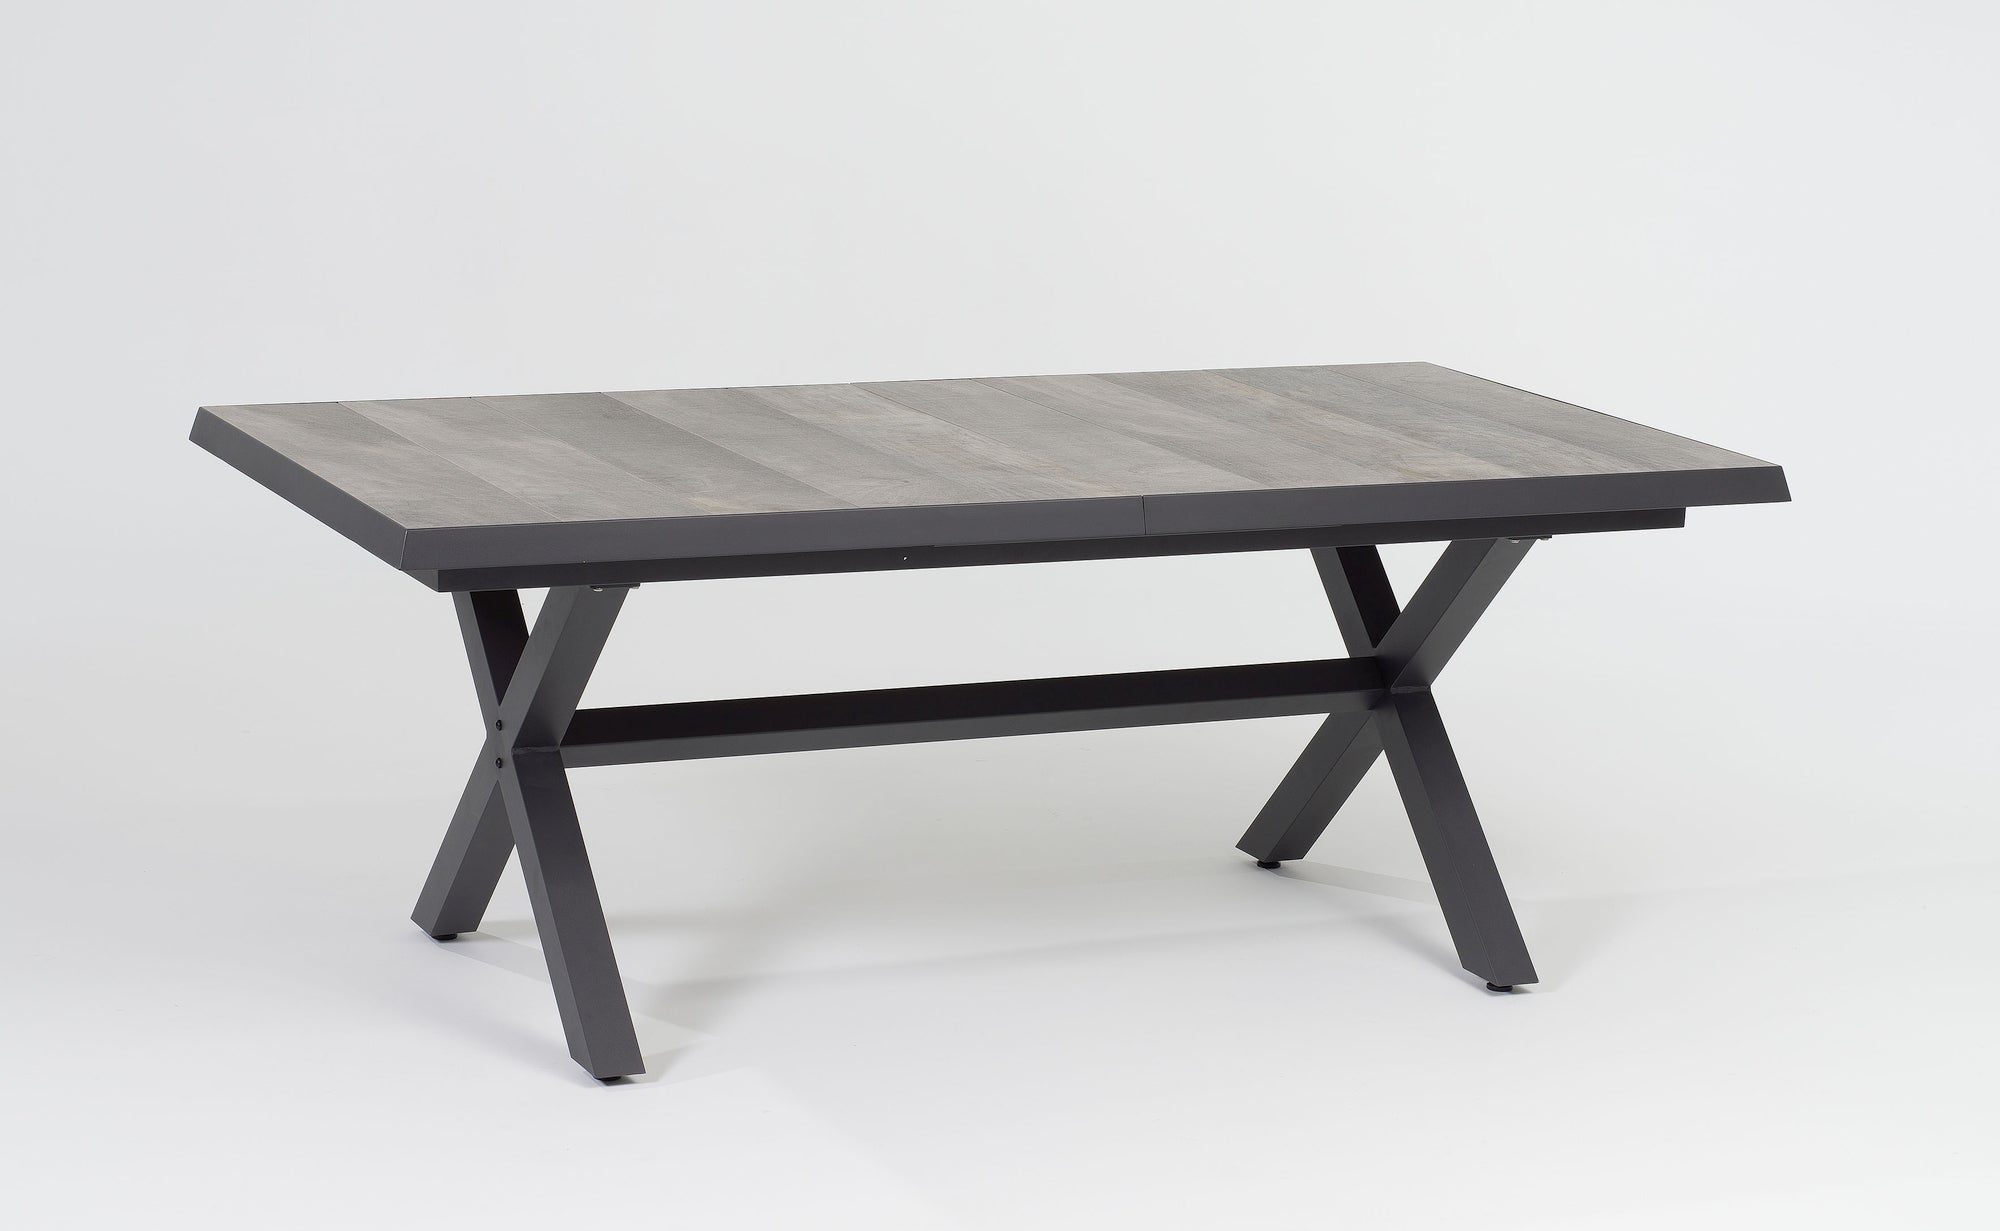 Verstellbare Tischgruppe Kenny von Gartenmöbelshop.at mit mixed grau-braunem Kunststoffgeflecht und erweiterbarem Tisch mit Keramikplatte in Schieferholz-Optik.